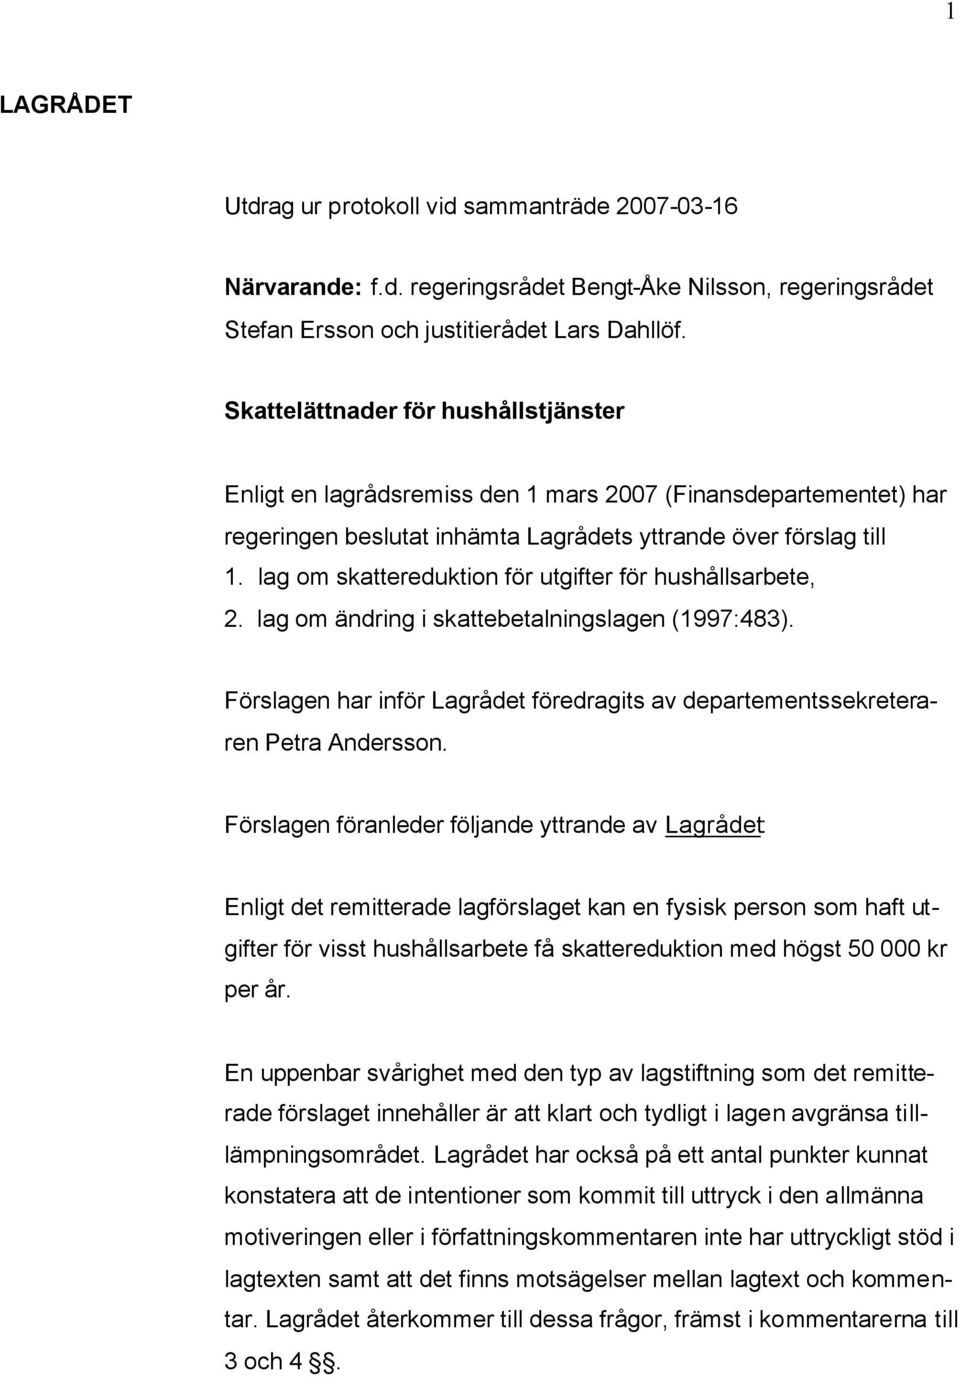 lag om skattereduktion för utgifter för hushållsarbete, 2. lag om ändring i skattebetalningslagen (1997:483). Förslagen har inför Lagrådet föredragits av departementssekreteraren Petra Andersson.